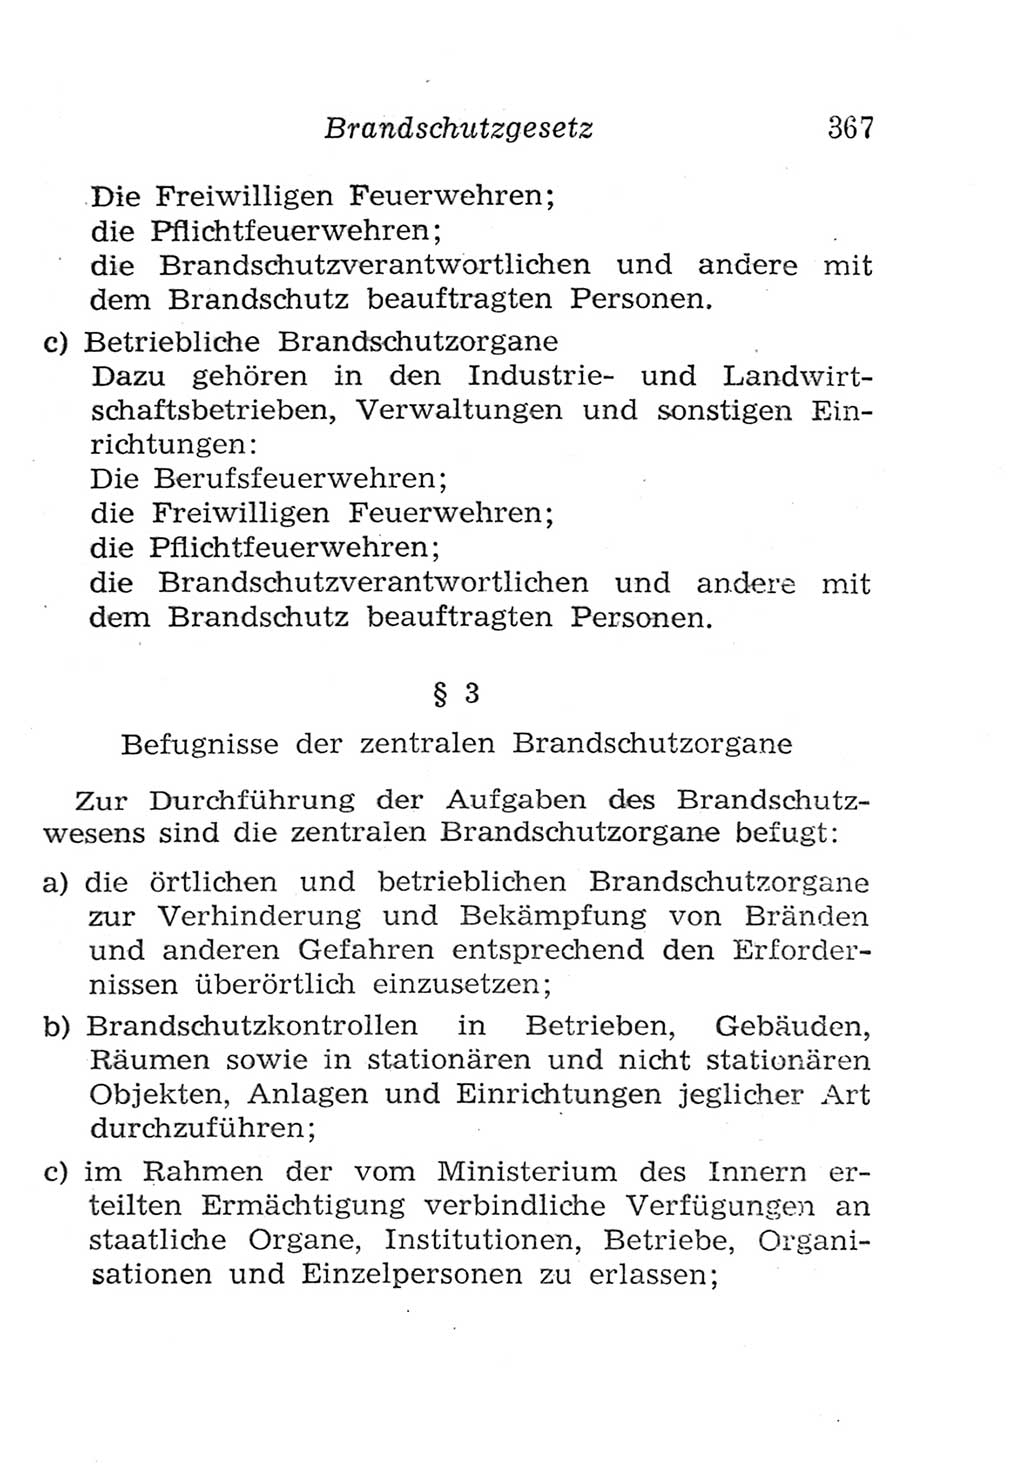 Strafgesetzbuch (StGB) und andere Strafgesetze [Deutsche Demokratische Republik (DDR)] 1957, Seite 367 (StGB Strafges. DDR 1957, S. 367)